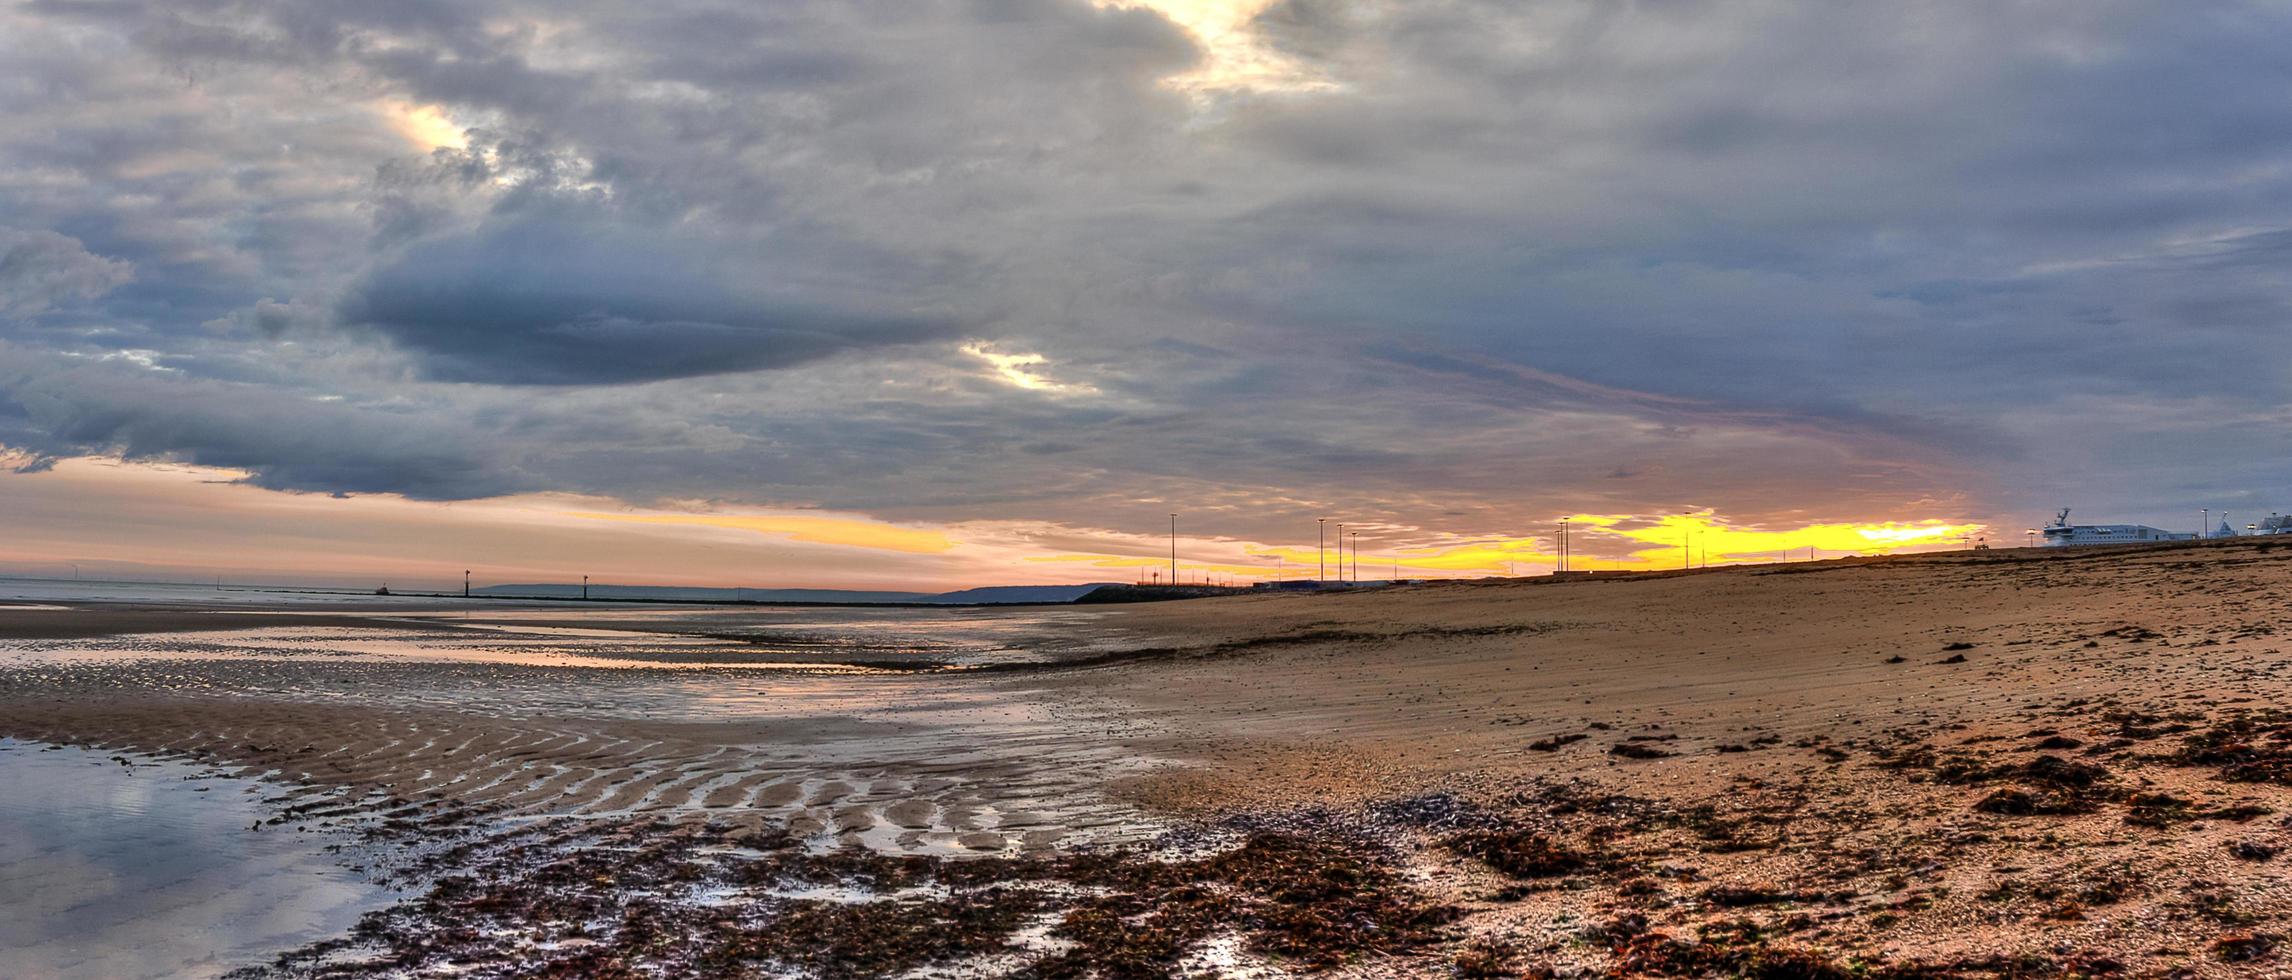 céu nublado colorido do nascer do sol em uma praia na normandia, frança foto